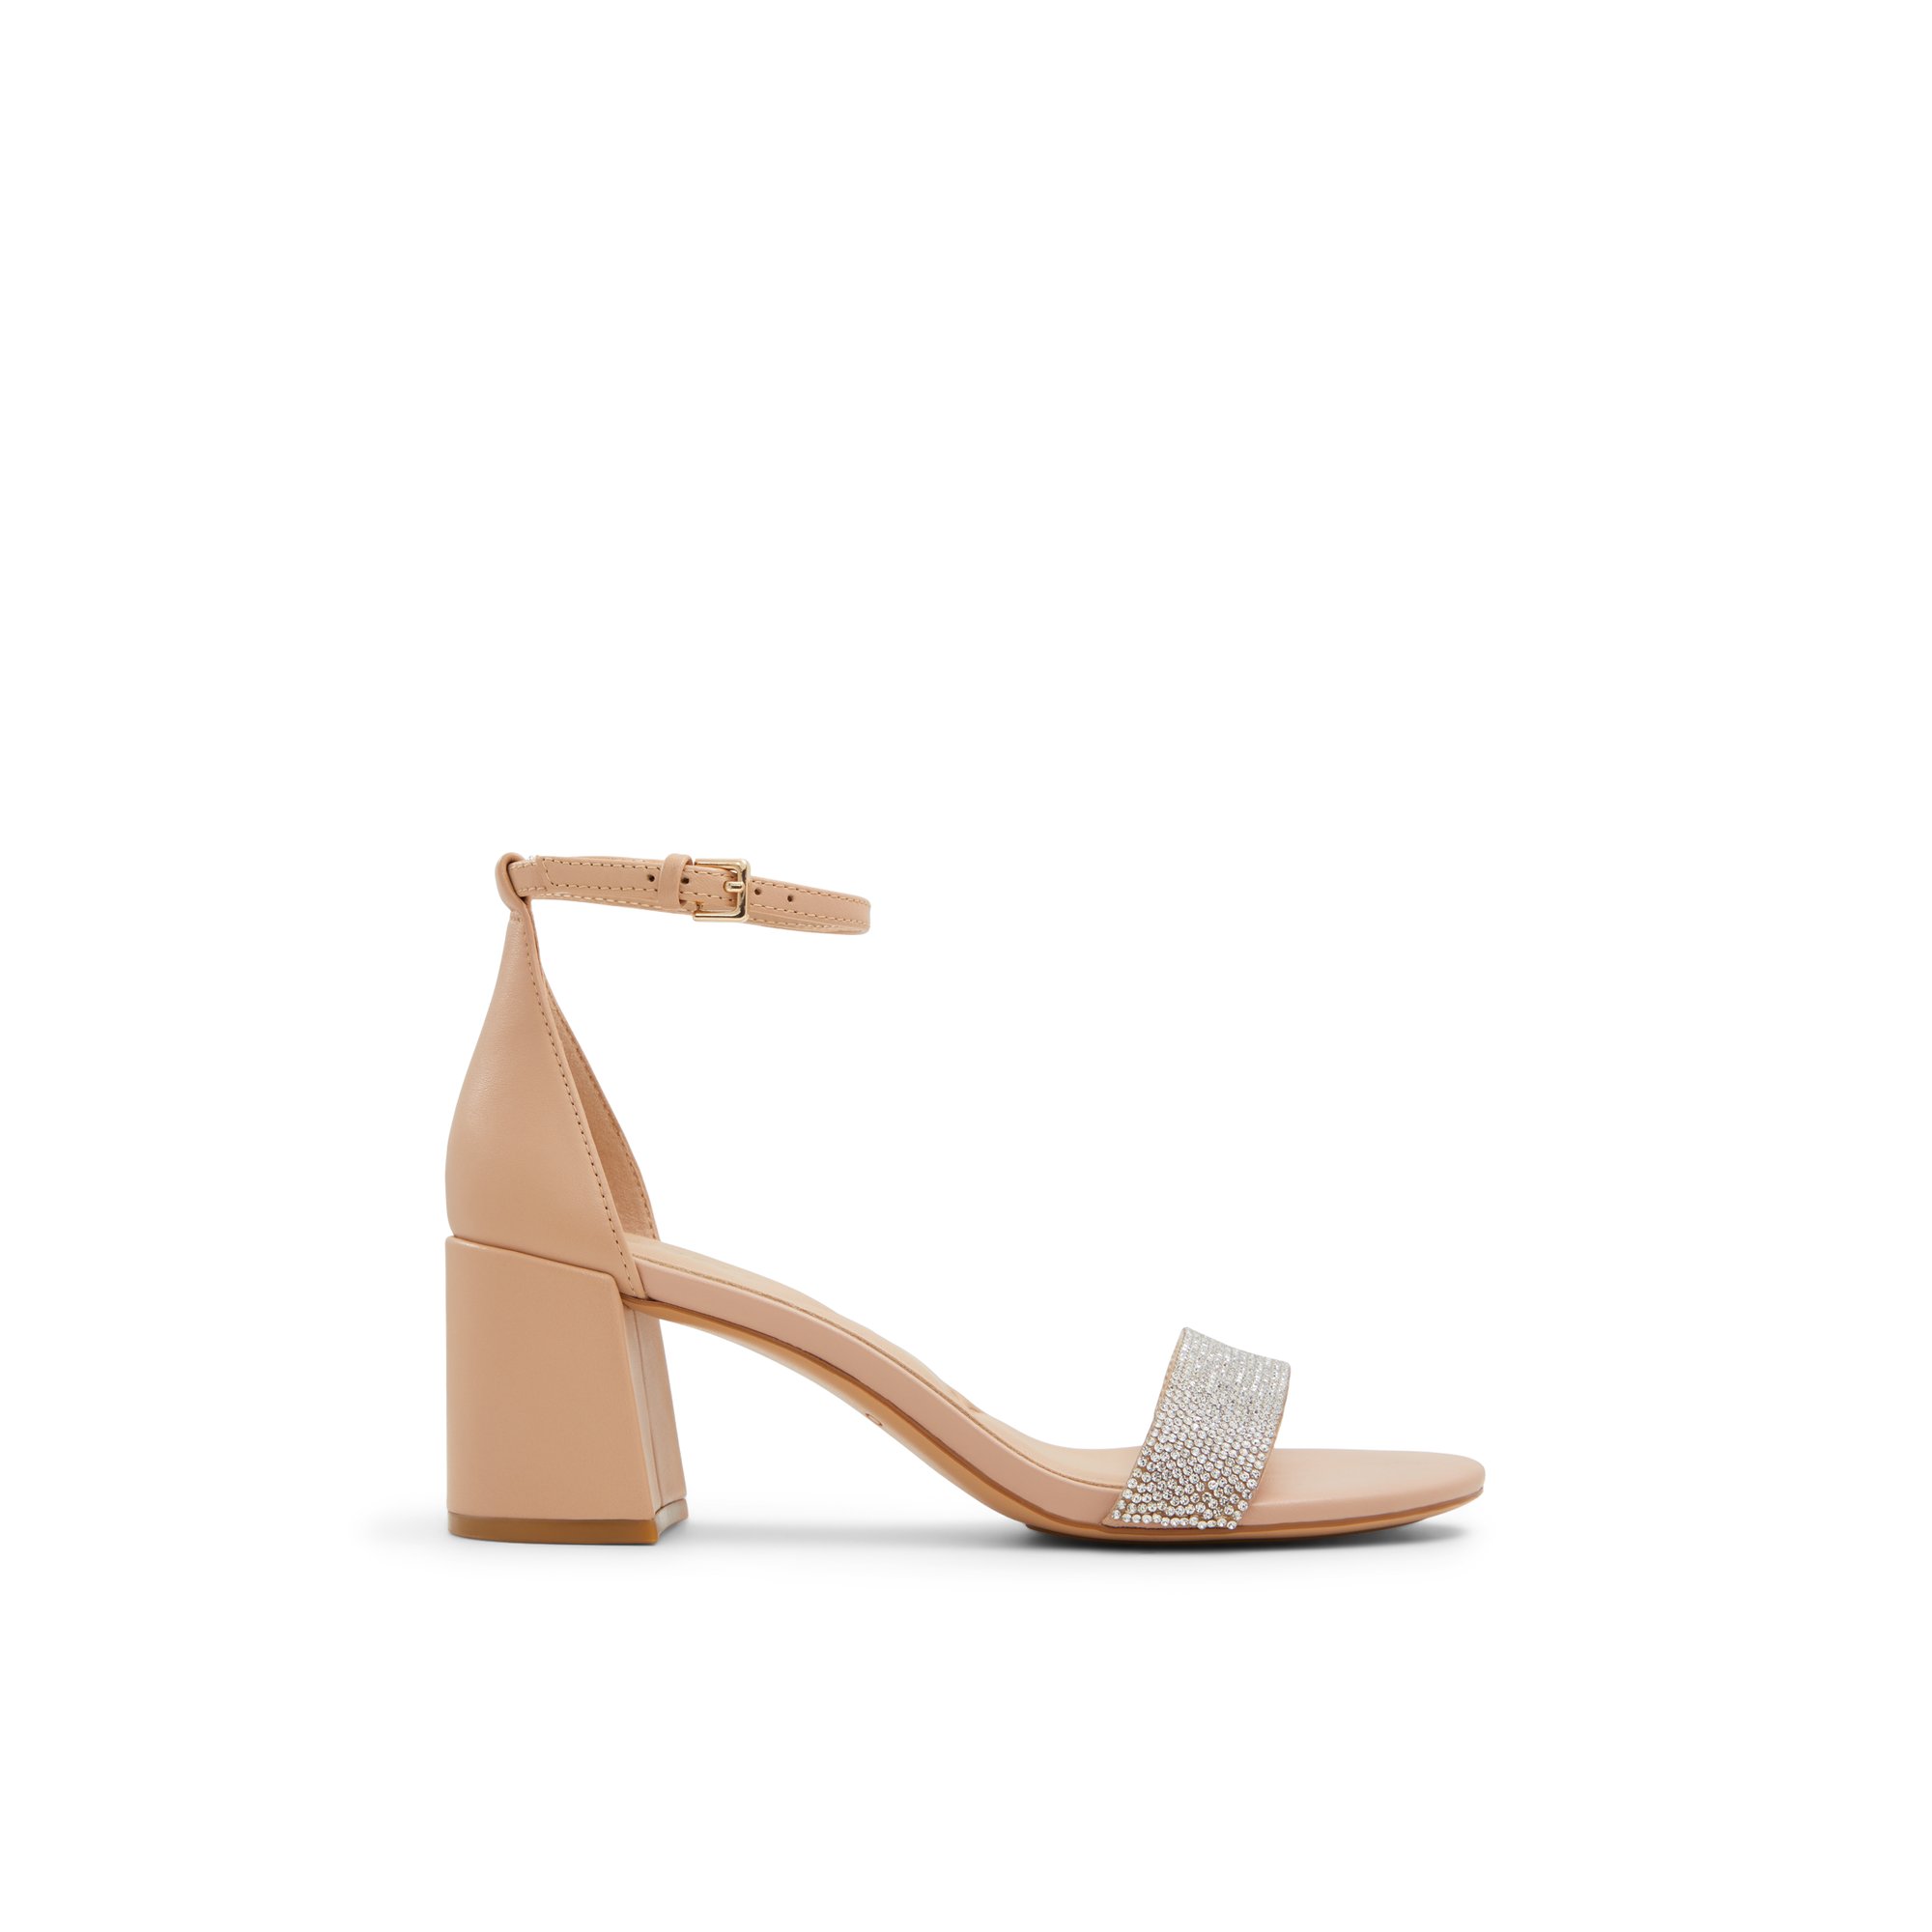 ALDO Pristine - Women's Sandals Strappy - Beige